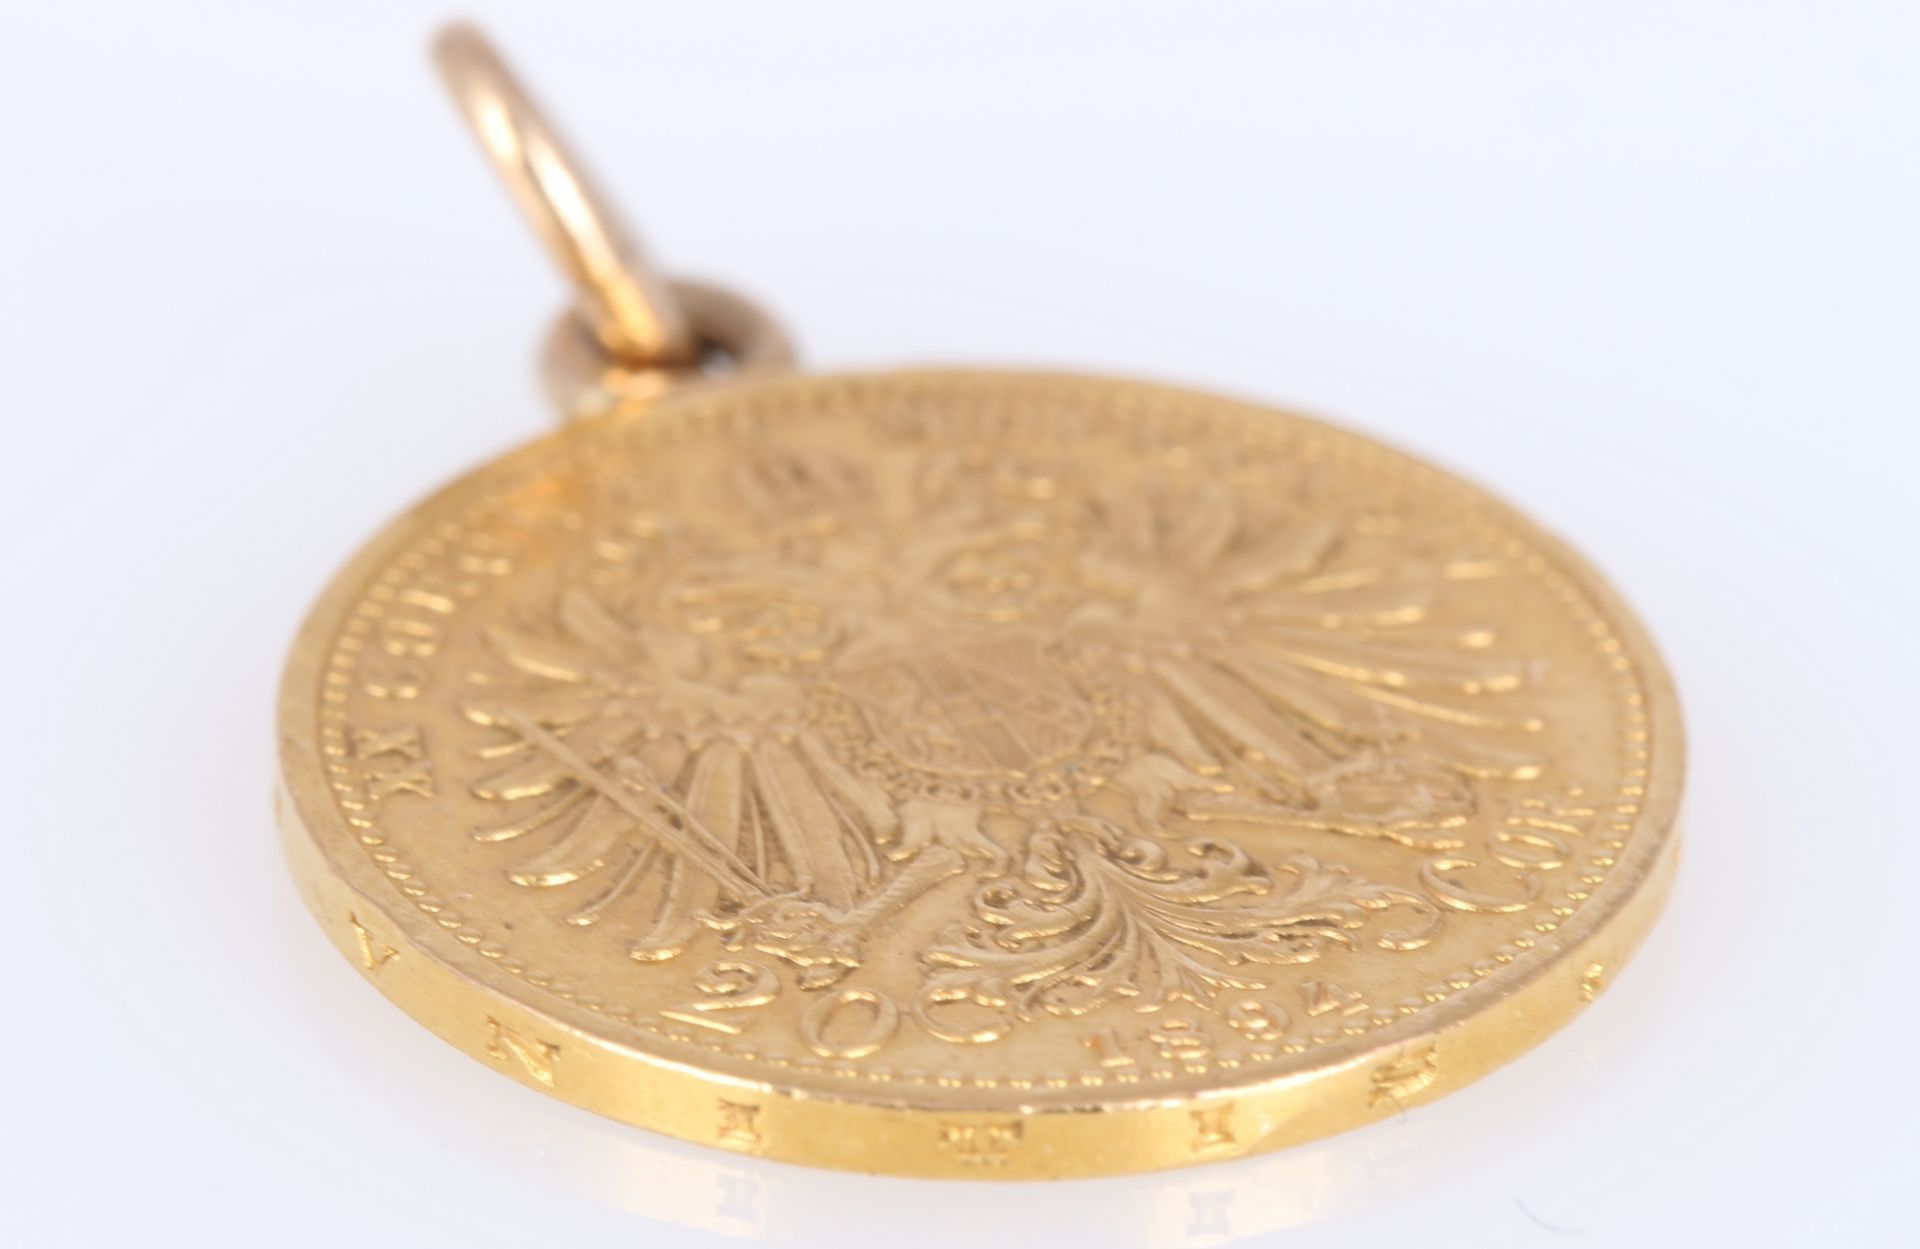 Goldmünze Österreich 20 Kronen 1894 Kaiser Franz Joseph I., austrian gold coin as pendant, - Image 3 of 3